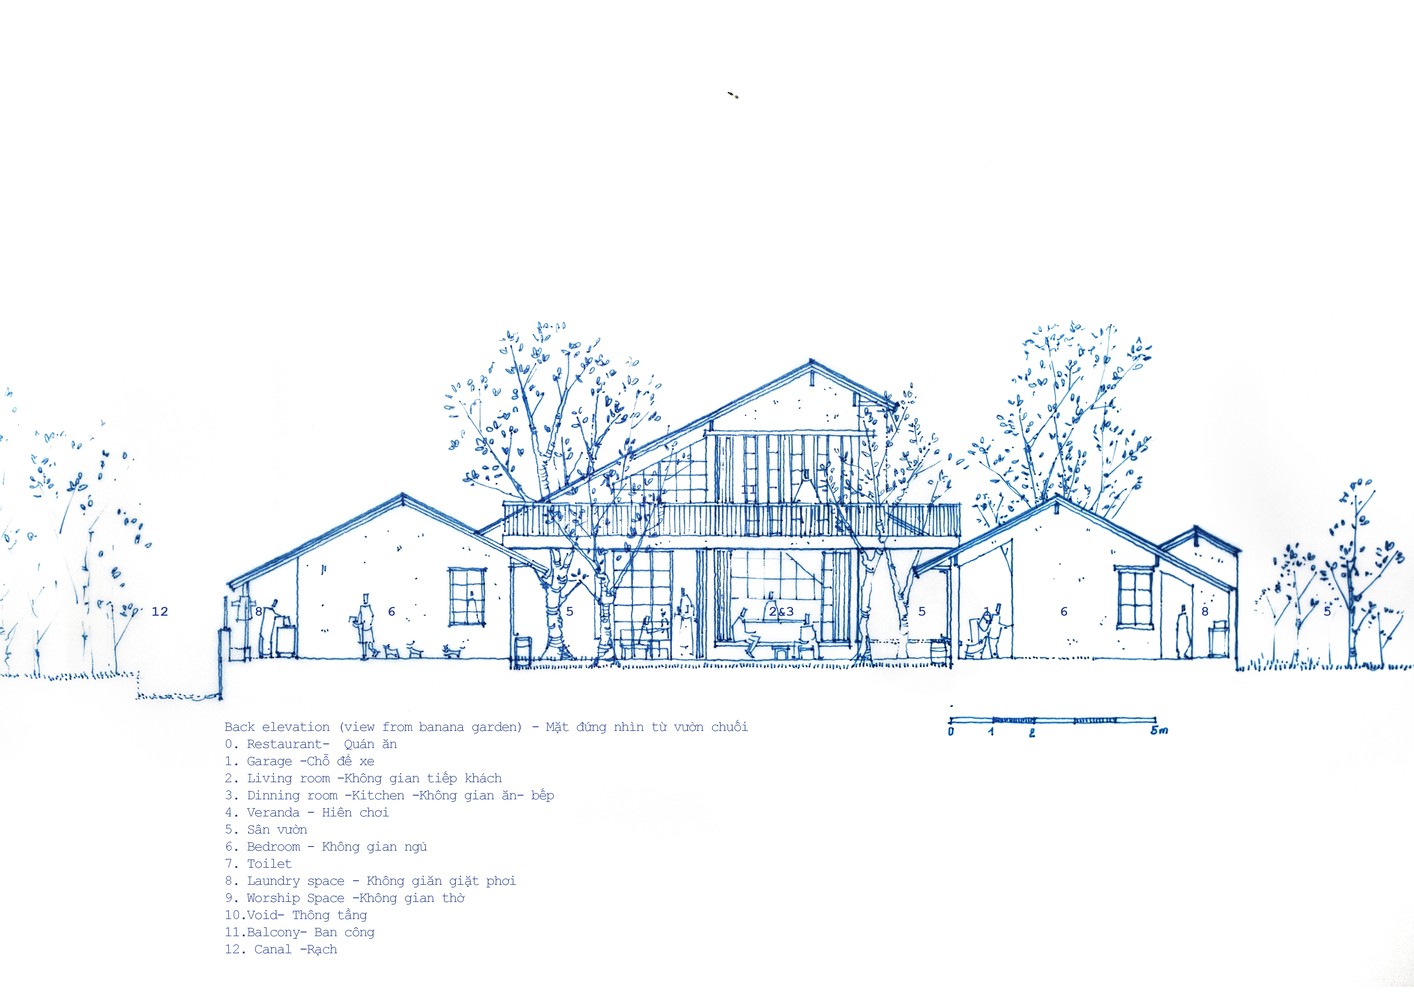 

Thiết kế bản vẽ chi tiết mặt đứng nhìn từ vườn chuối Bình Dương House
